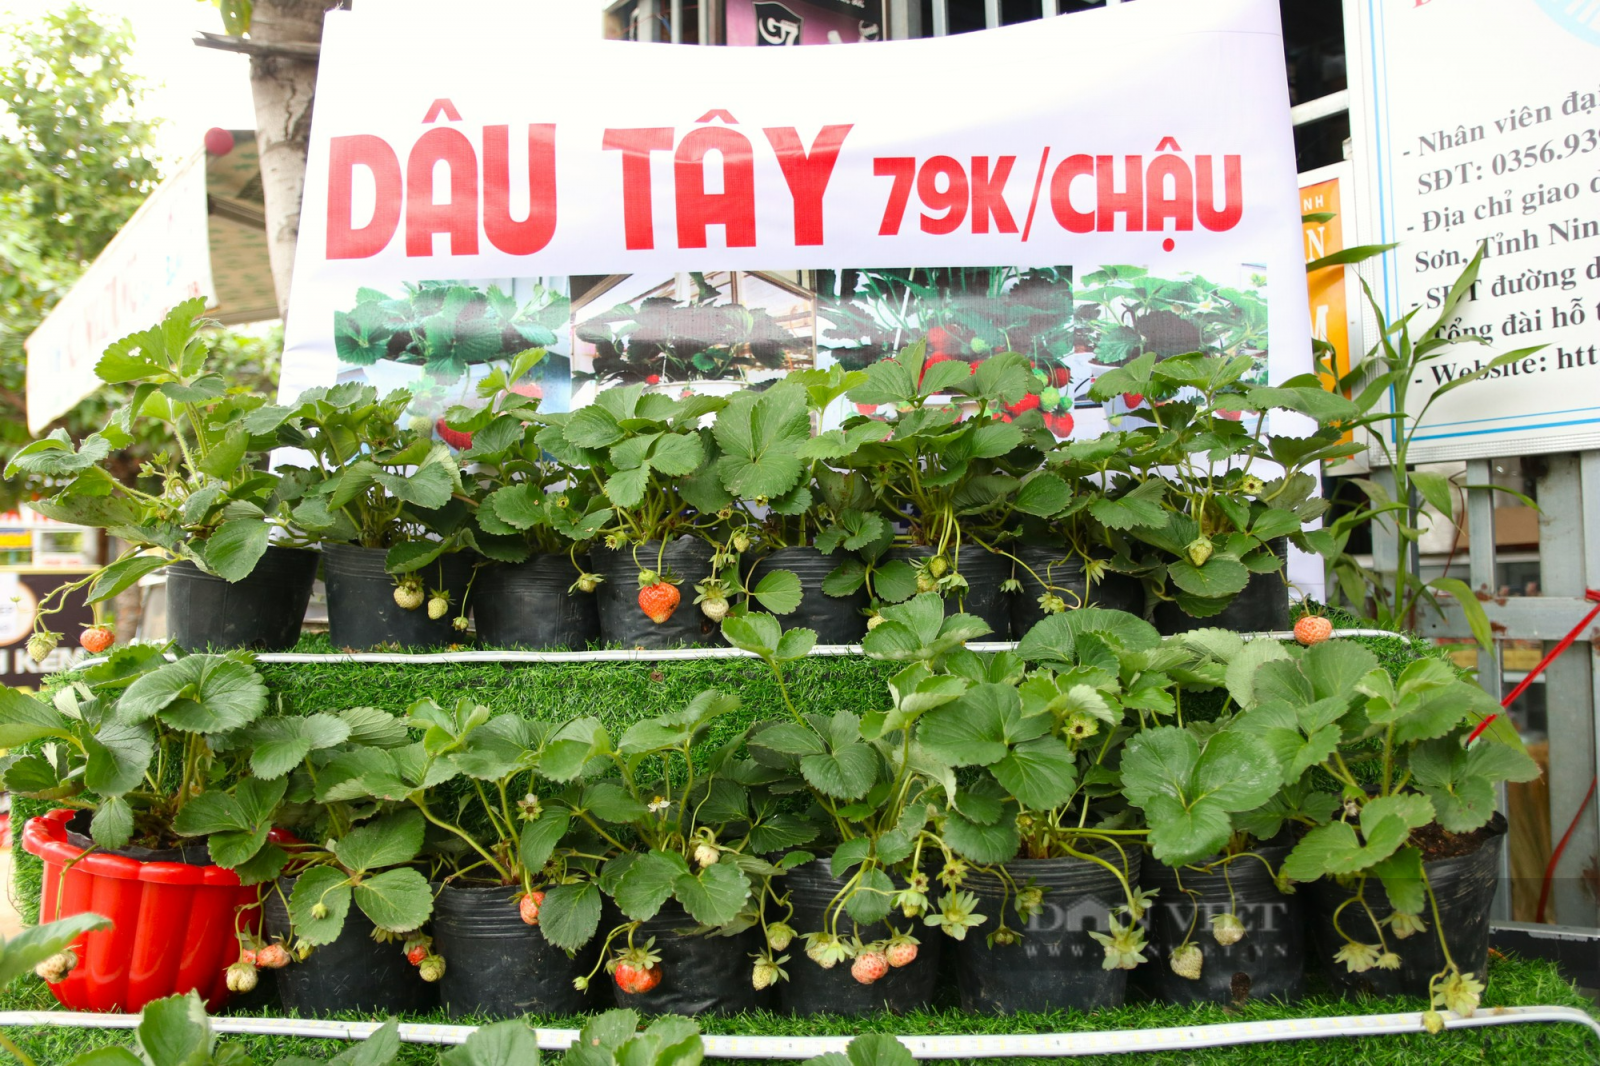 Dâu tây trồng cảnh xuống phố phục vụ thị trường chưng tết ở Ninh Thuận - Ảnh 5.